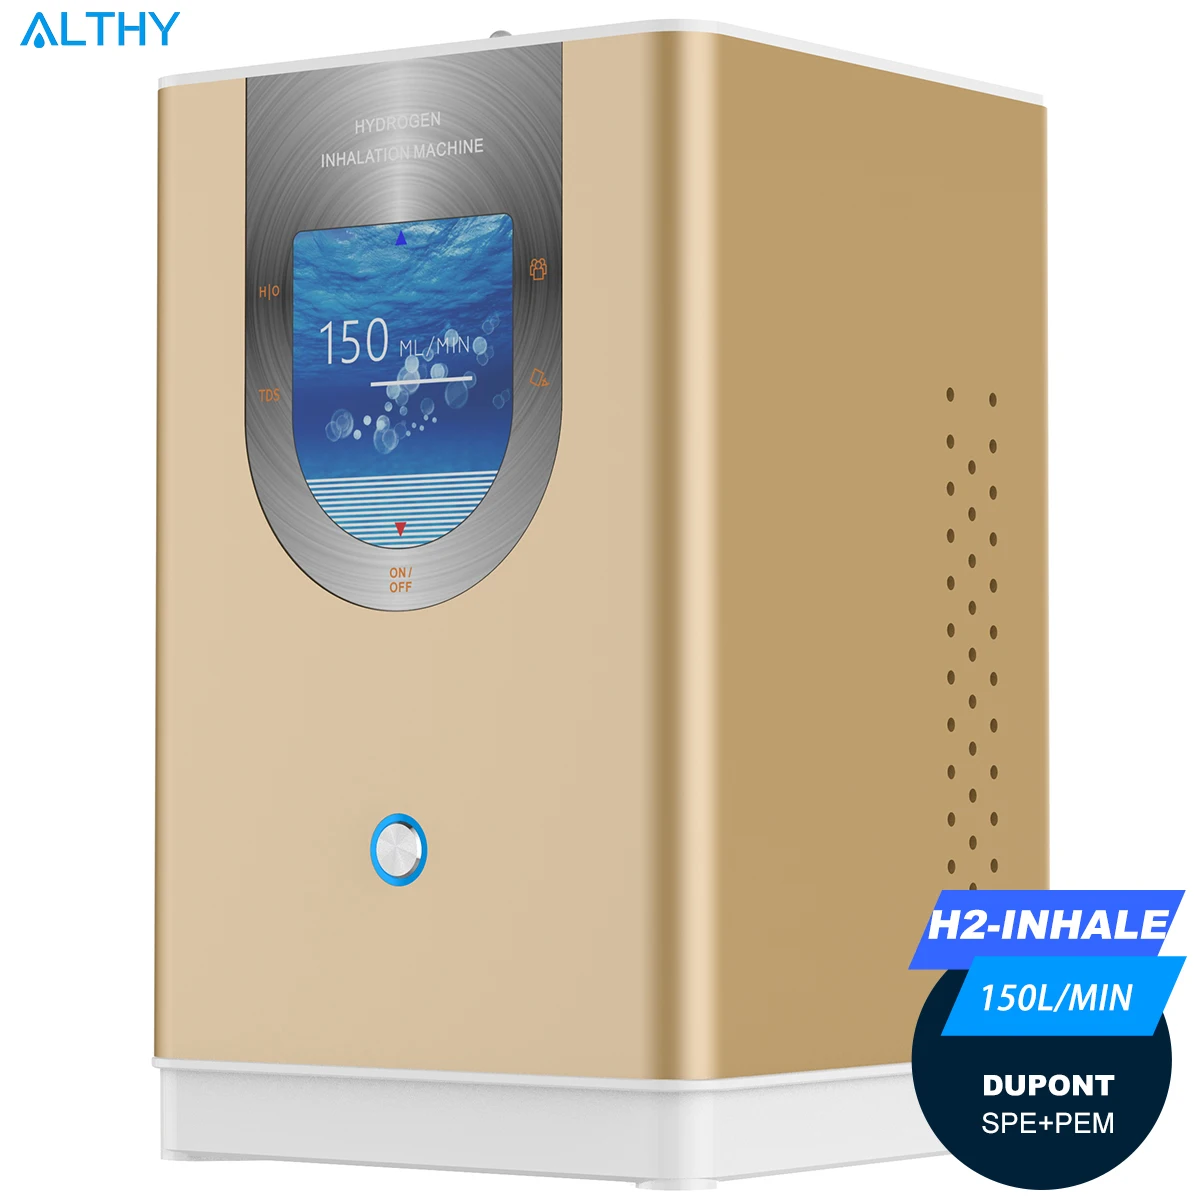 Фото - ALTHY машина для ингаляции водорода генератор воды 99.99% высокой чистоты низкий уровень шума H2 ингаляция SPE/PEM 150 мл/мин. althy h2 plus водородный генератор воды бутылка dupont spe